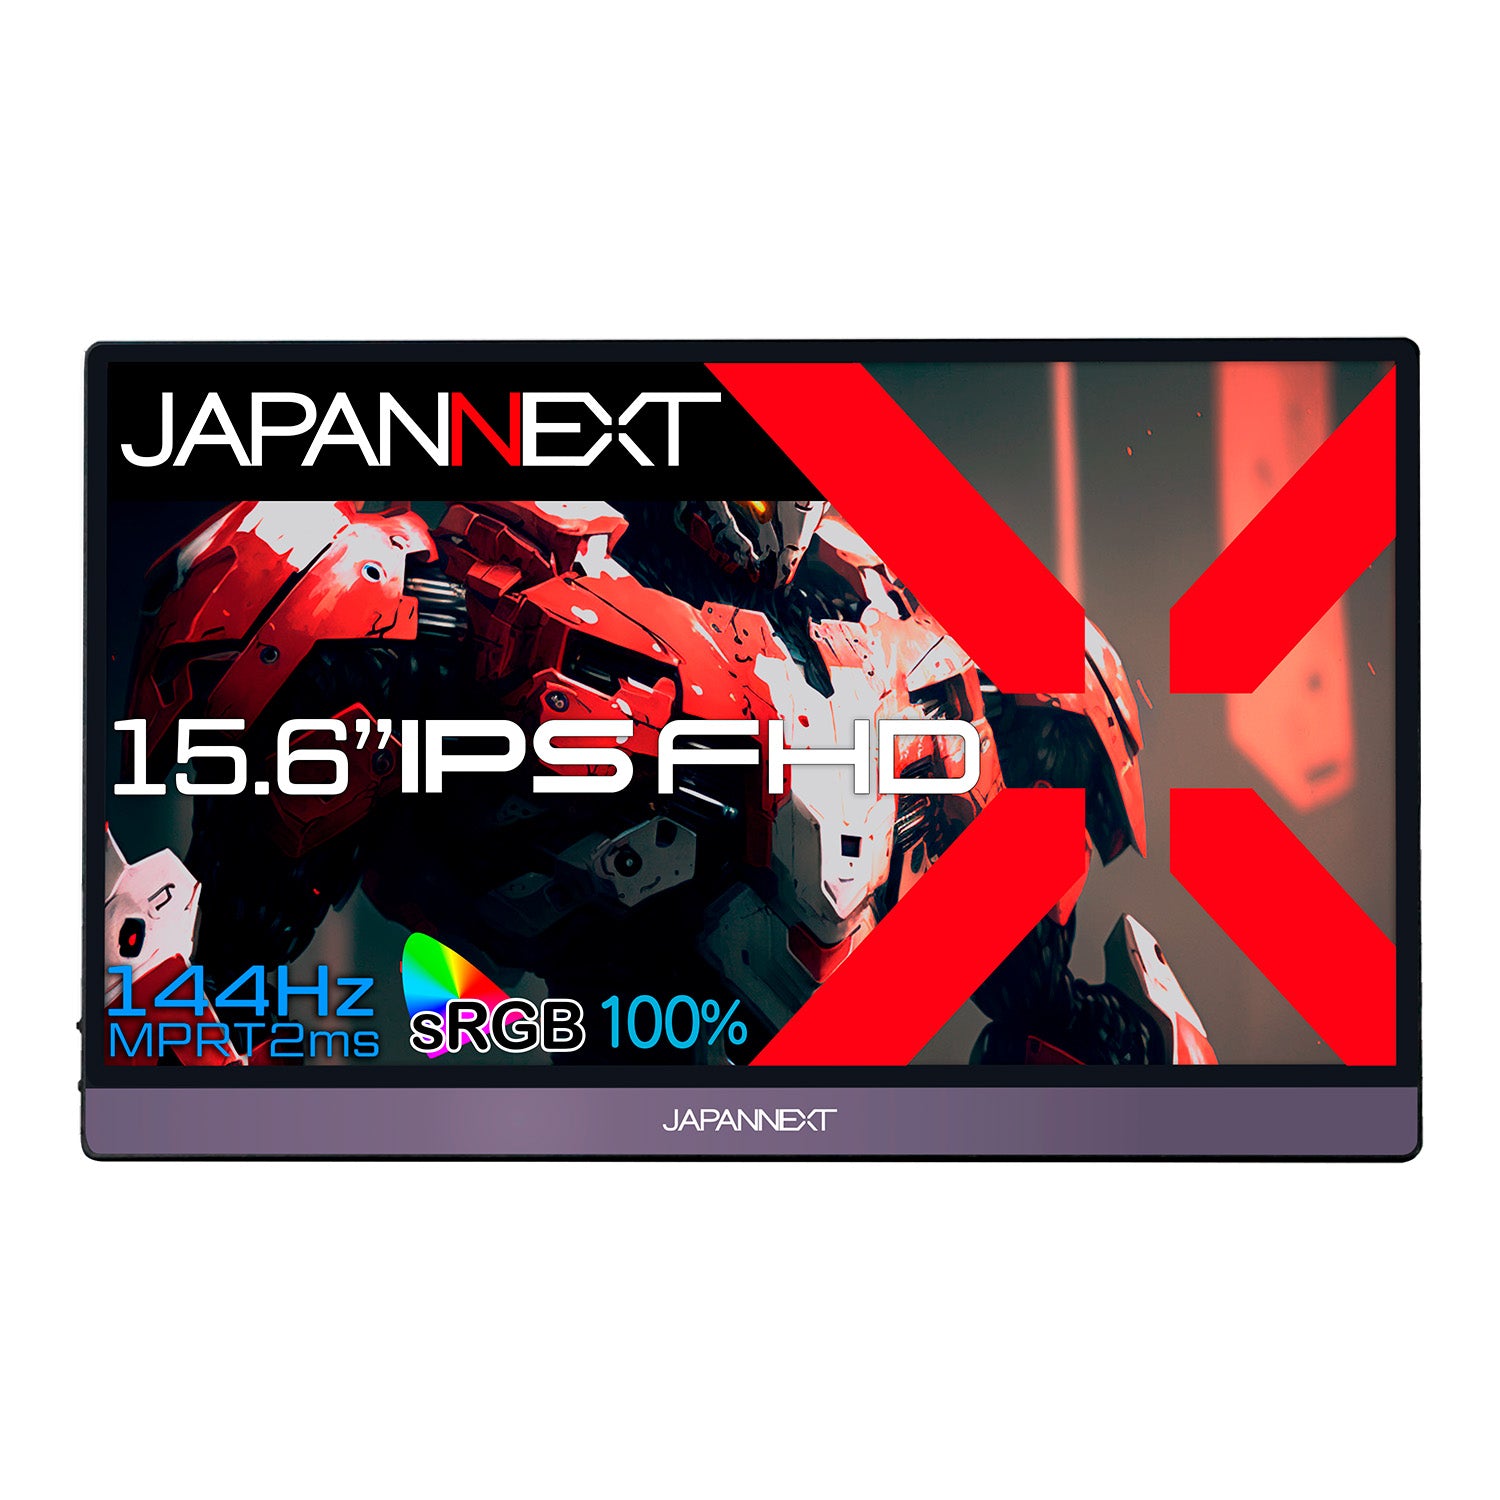 JAPANNEXT 15.6インチ IPSパネル搭載 144Hz対応 フルHDモバイルゲーミングモニター JN-MD-156IPS144FHDR  miniHDMI USB Type-C HDR sRGB100% スマートケース付き